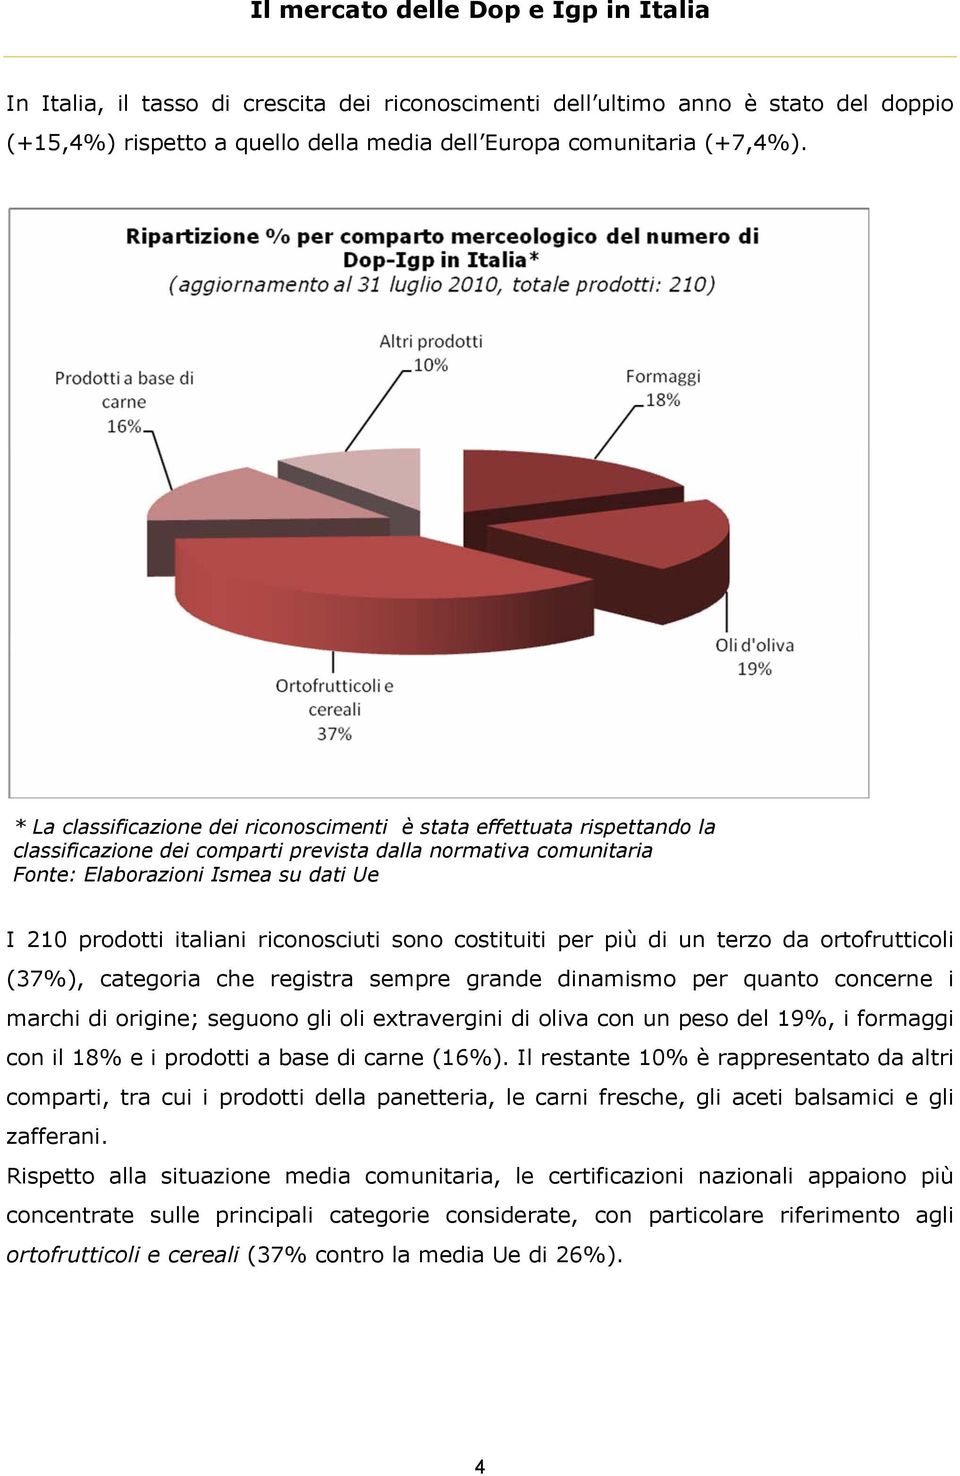 italiani riconosciuti sono costituiti per più di un terzo da ortofrutticoli (37%), categoria che registra sempre grande dinamismo per quanto concerne i marchi di origine; seguono gli oli extravergini